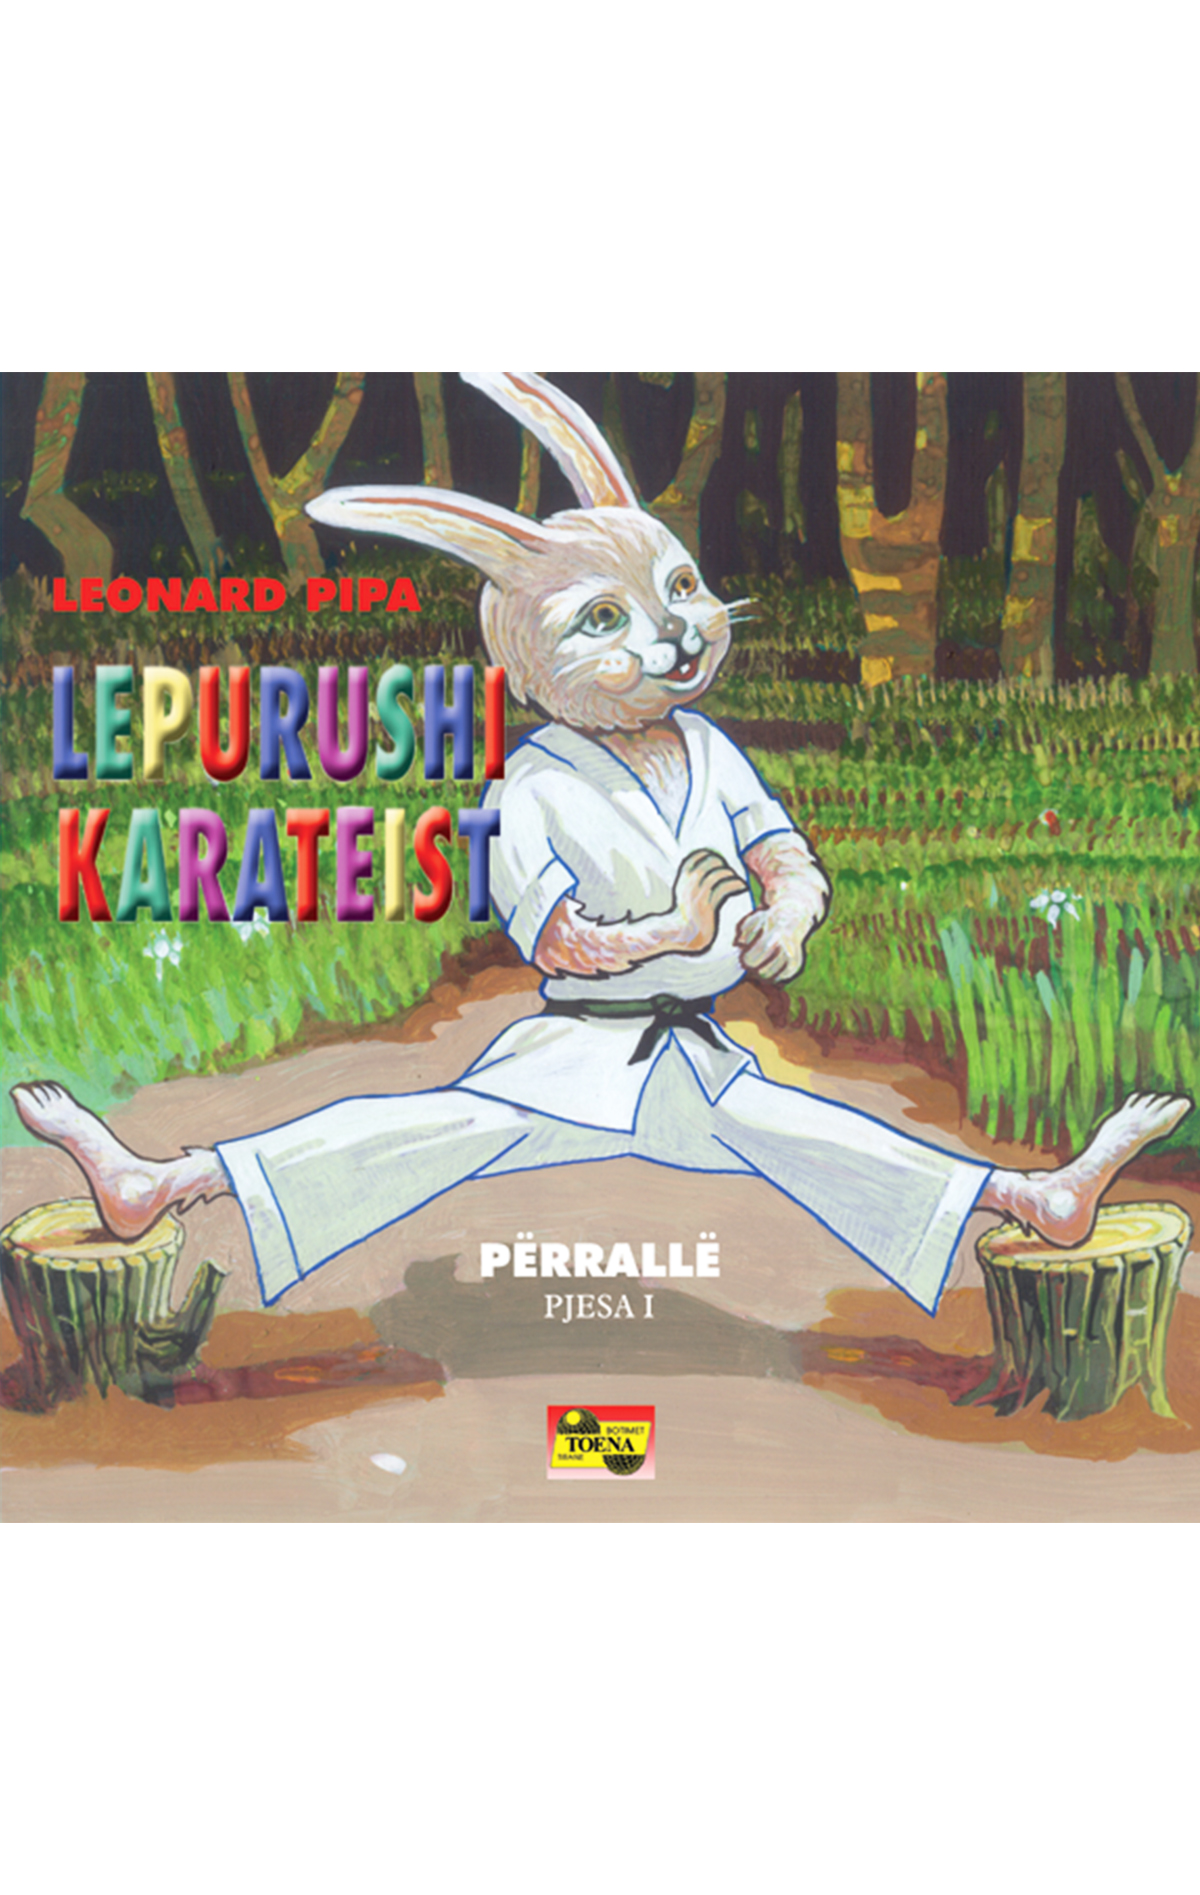 Lepurushi karateist